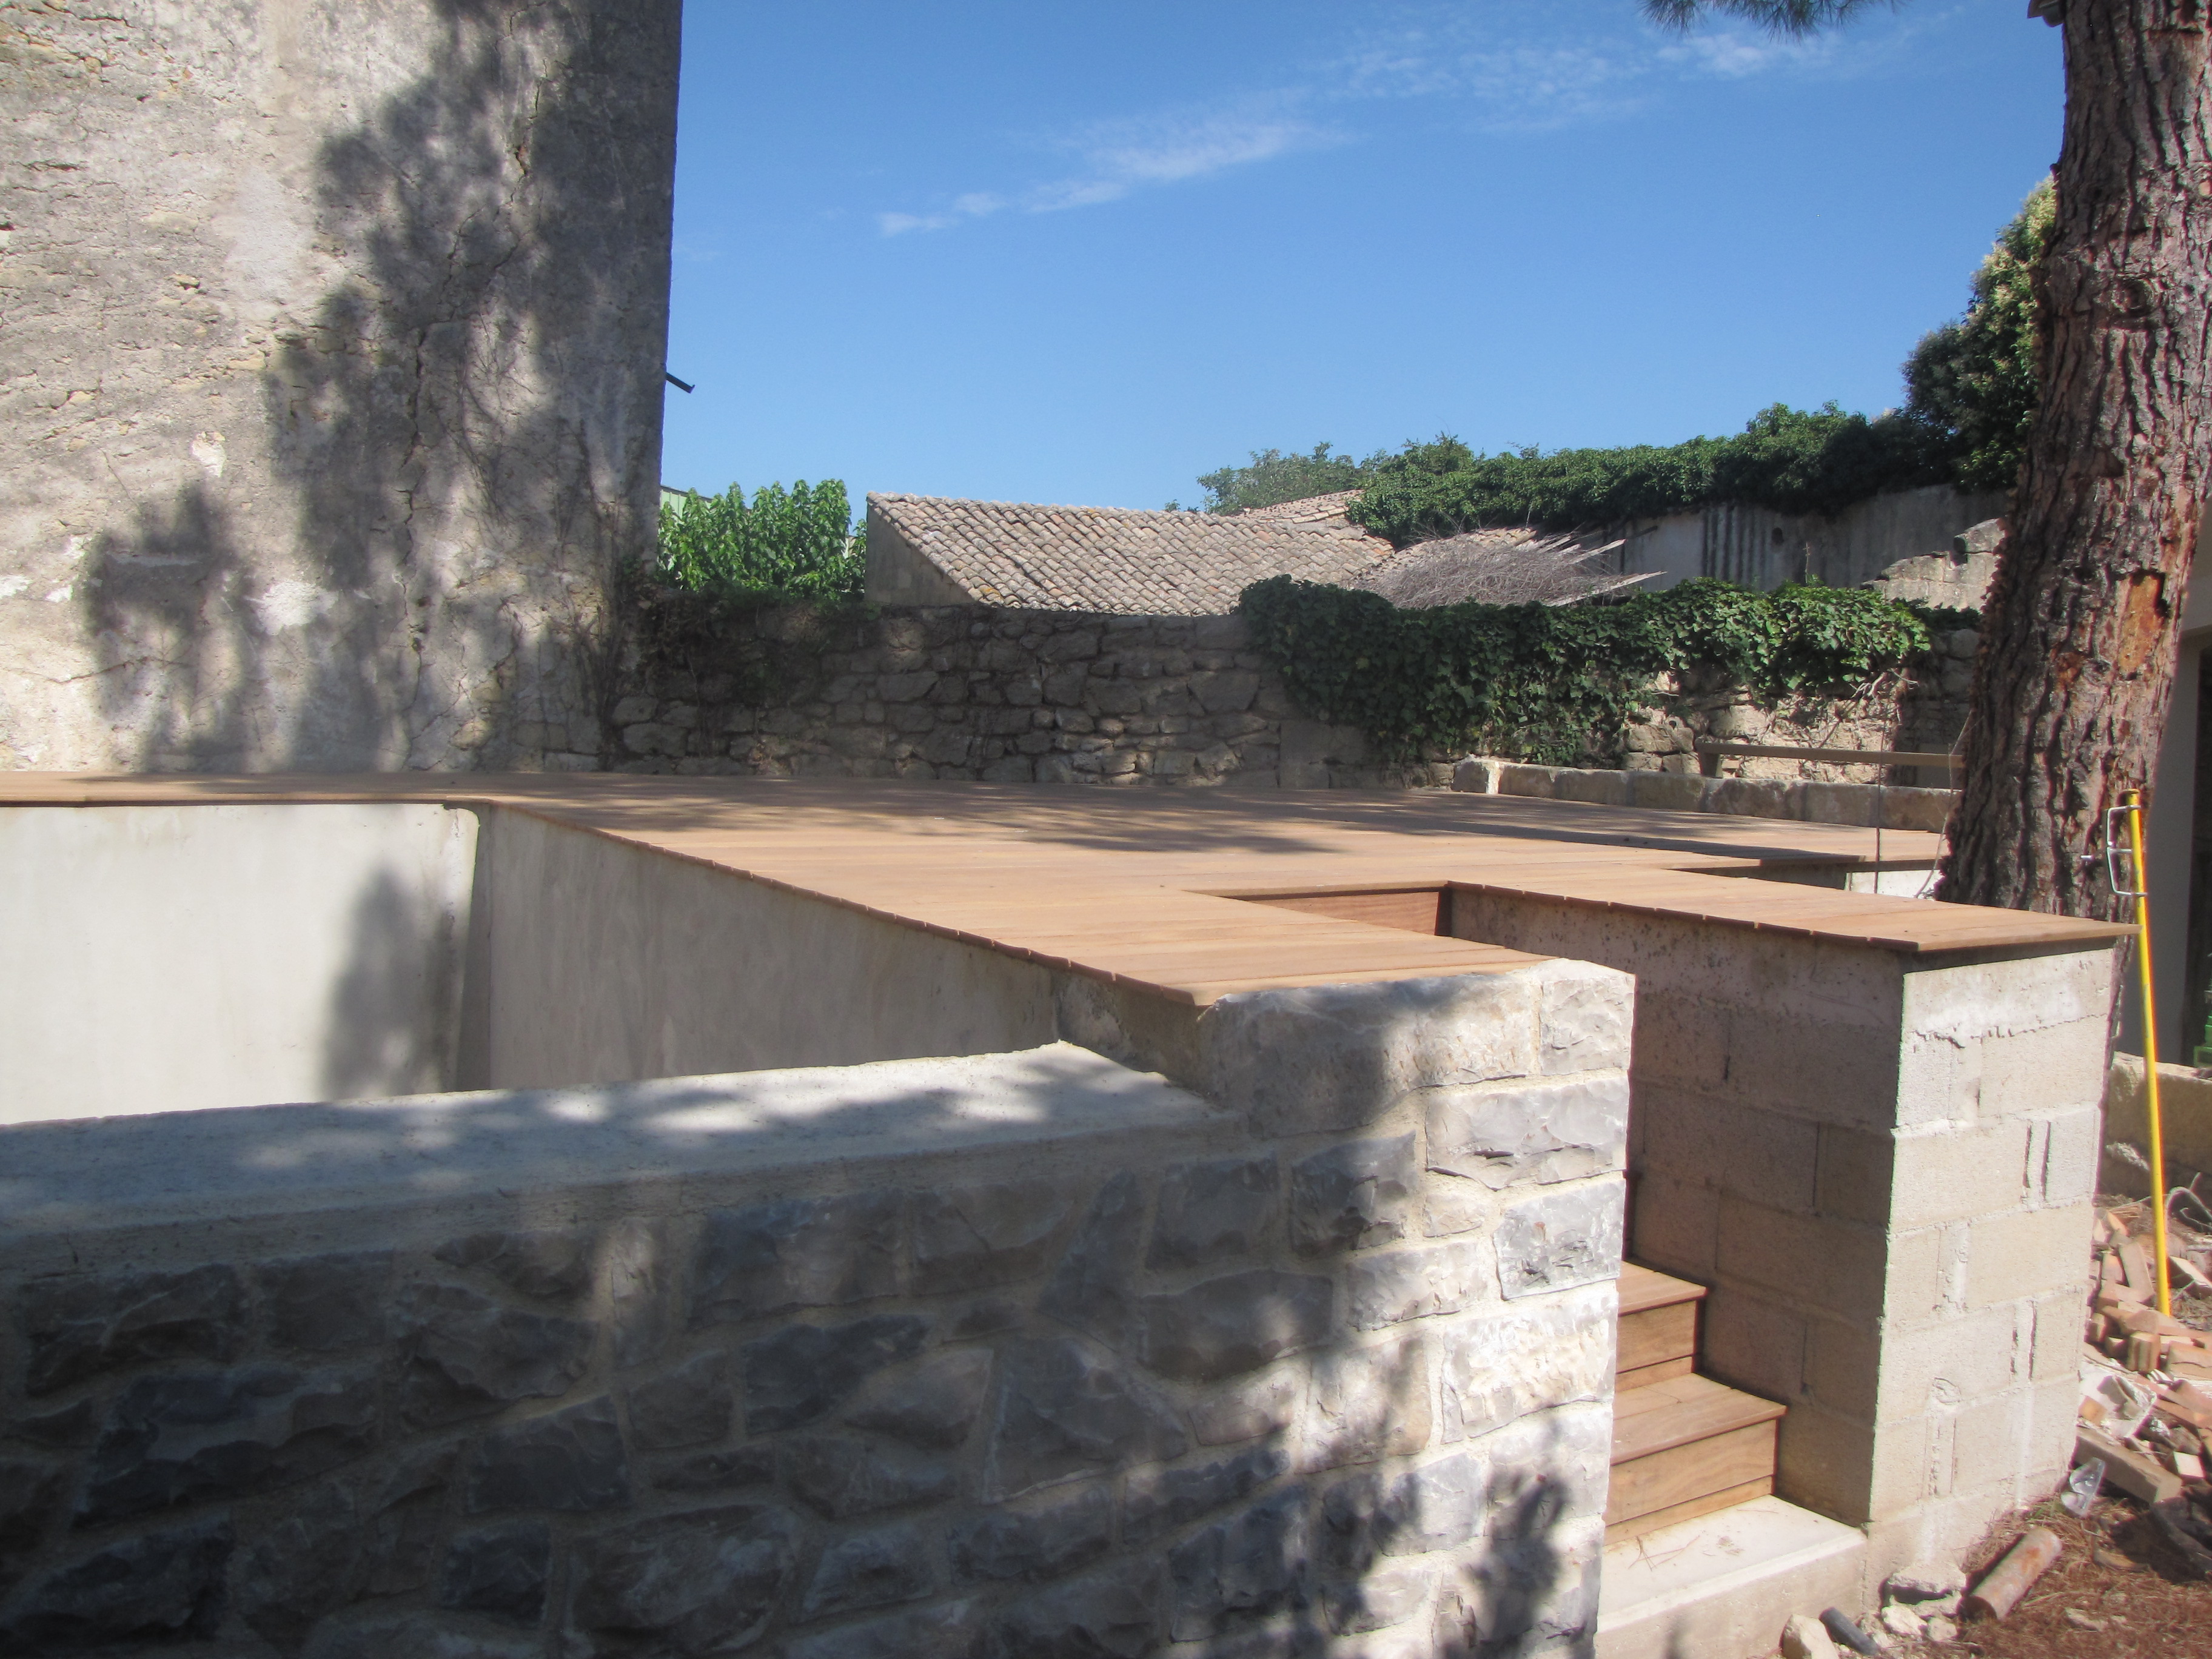 Desportes rénovation, Gard. Construction d'une piscine à débordement, habillage en pierre des extérieurs et plage en teck.